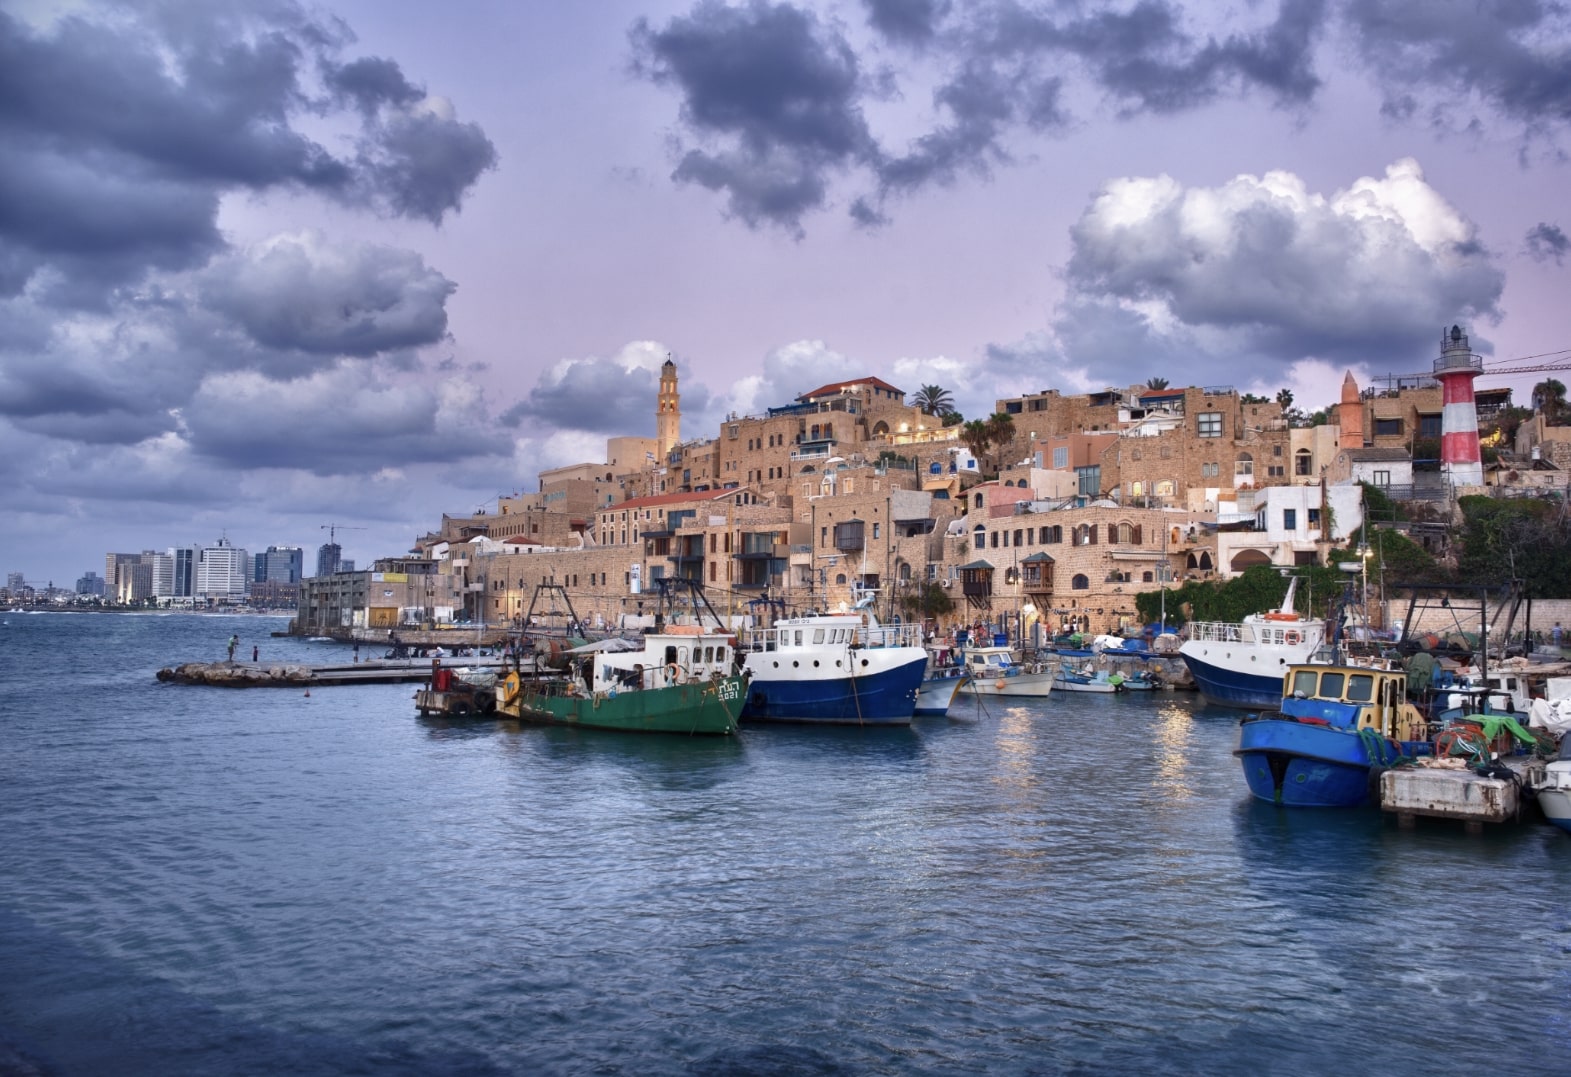 The old port in Jaffa. Tel Aviv